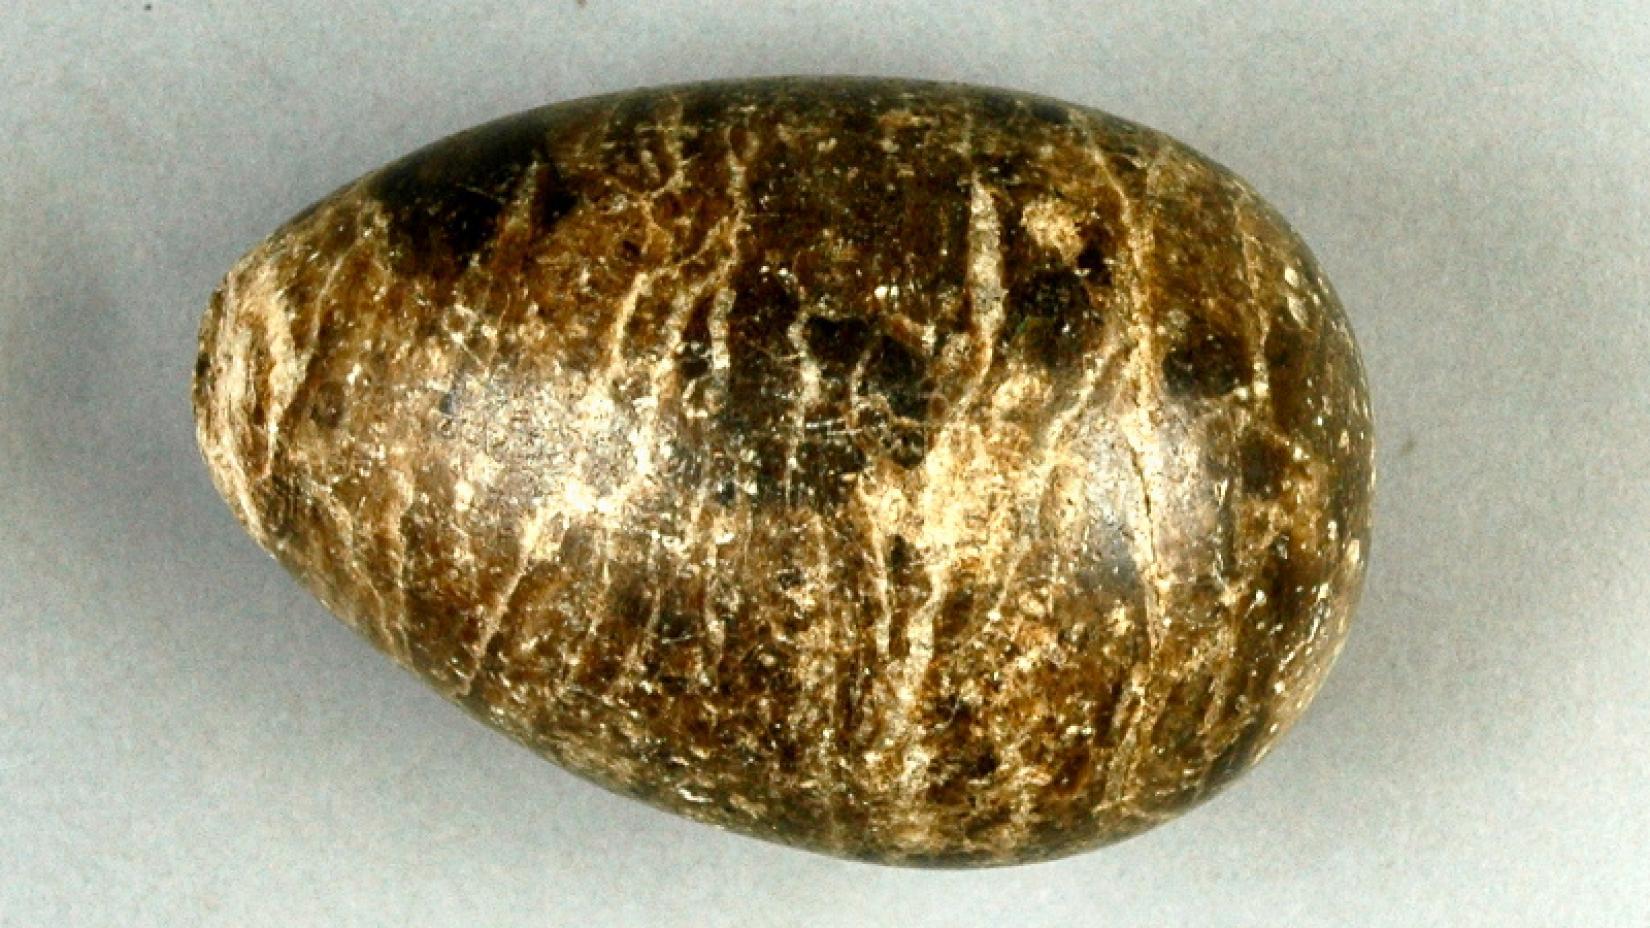 Яйцо из гипса, которое в своих экскурсиях часто использовал педагог, геолог и сотрудник музея Янис Гресте.